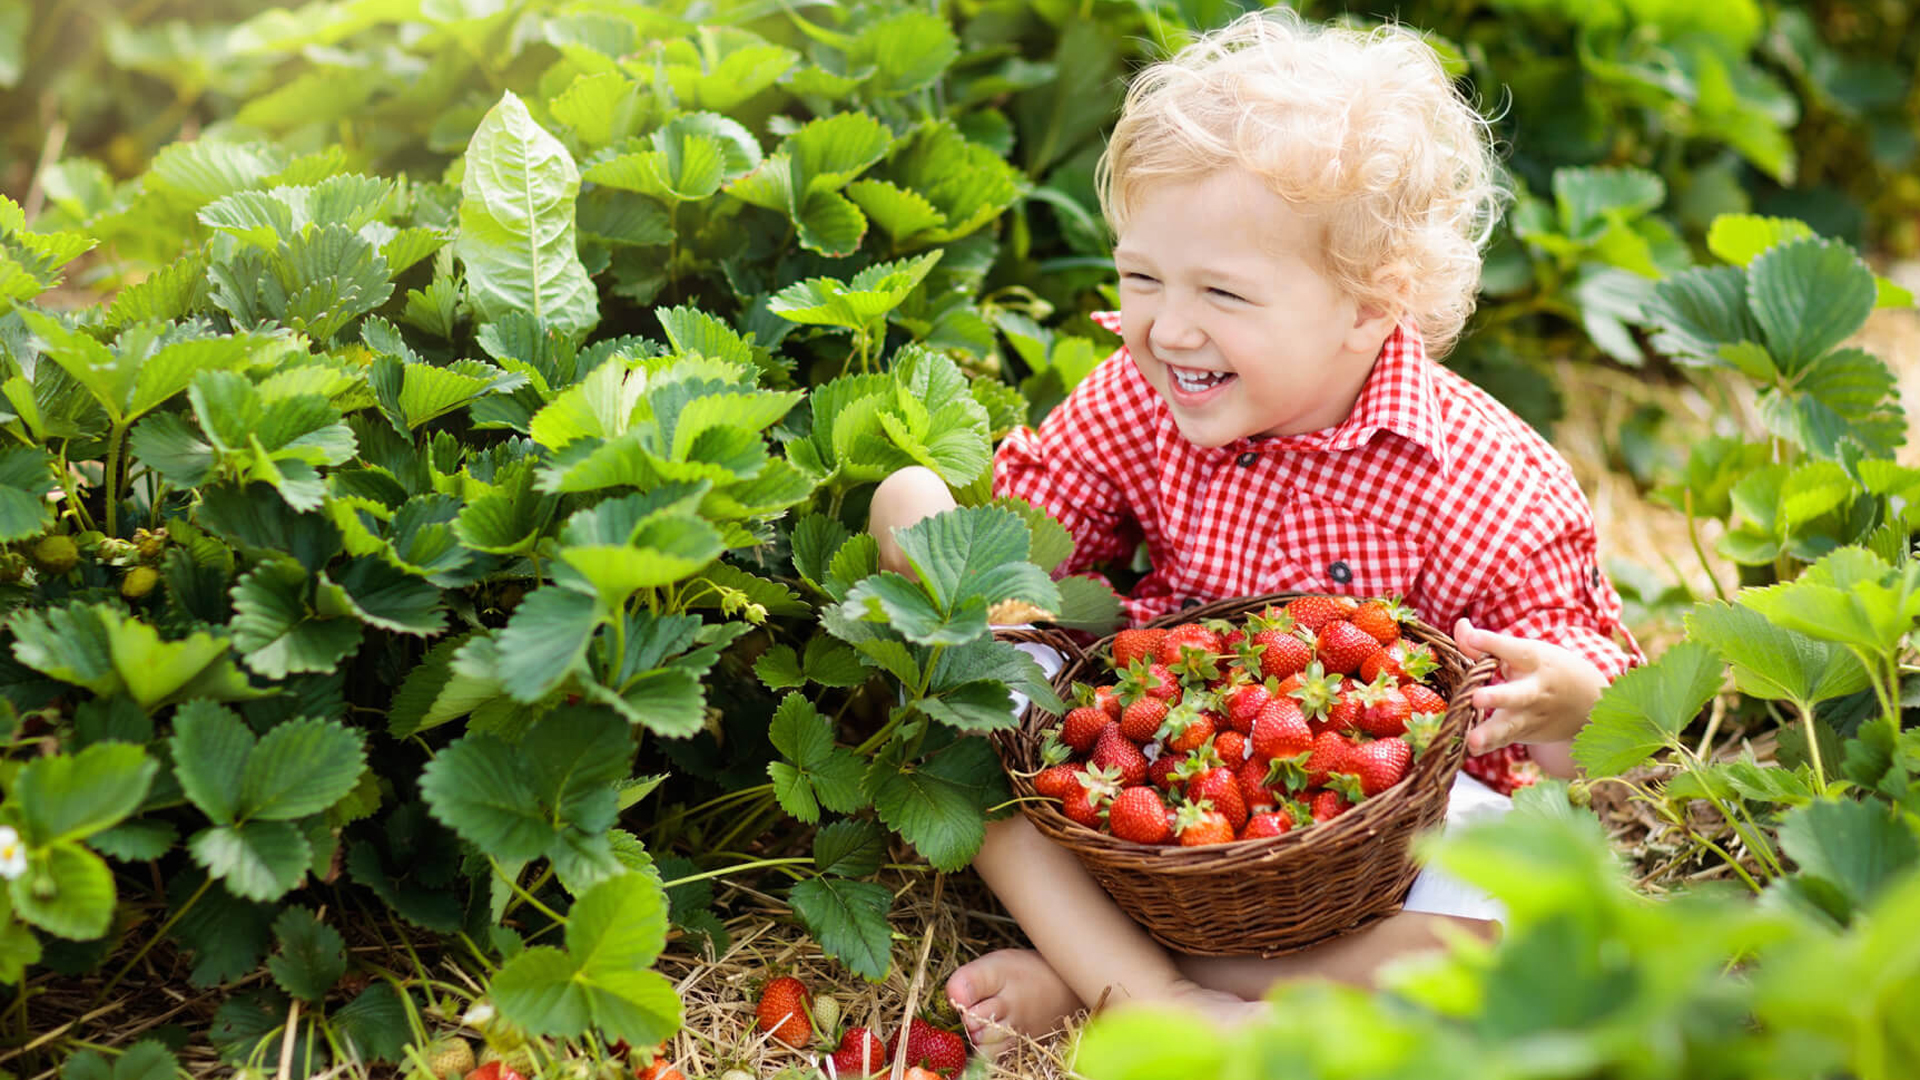 Child picking strawberries